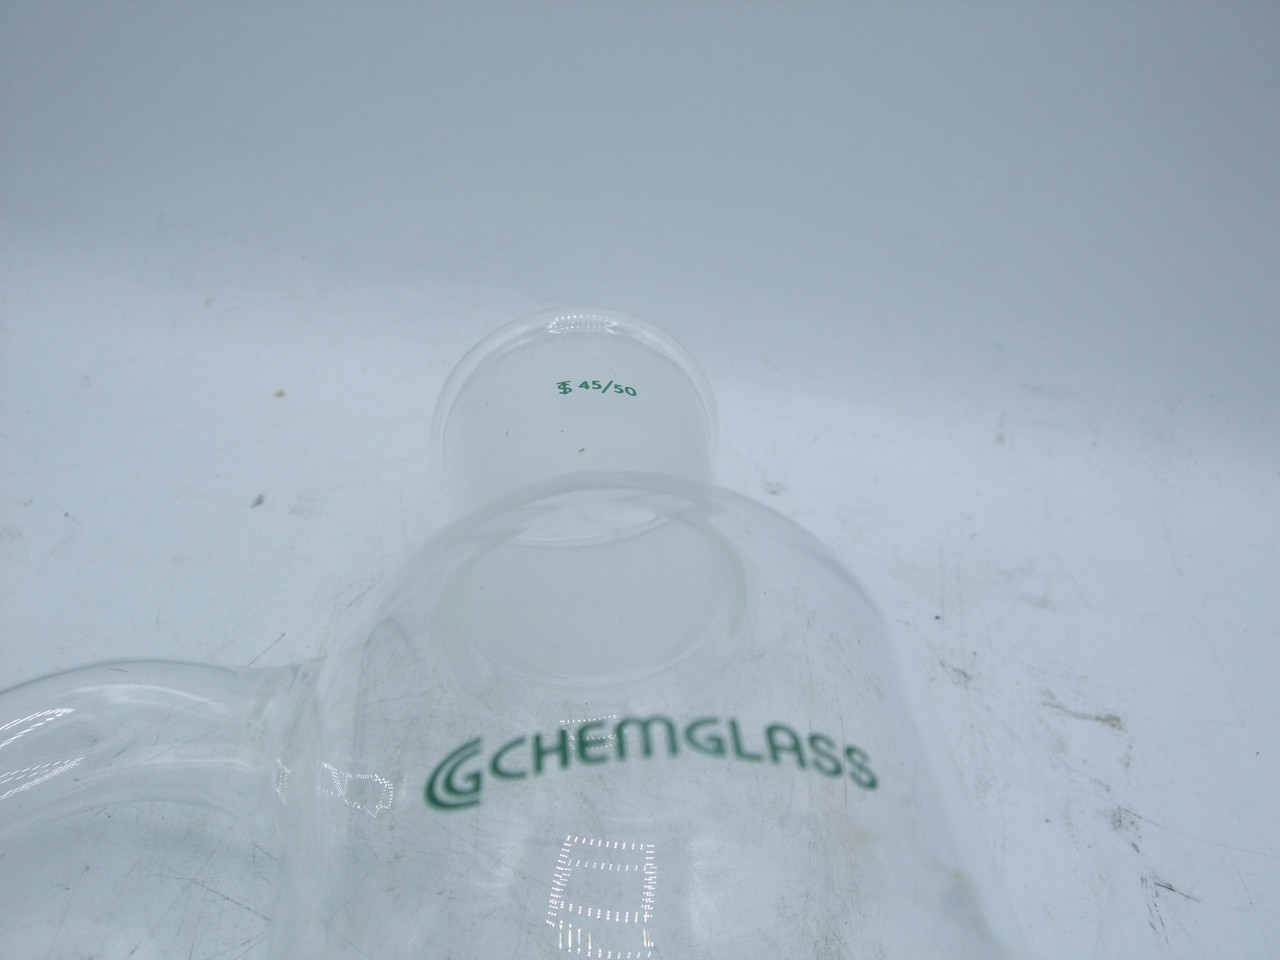 Chemglass CG-1360-01 Extractor, Liquid-Liquid, Continous, 45/50